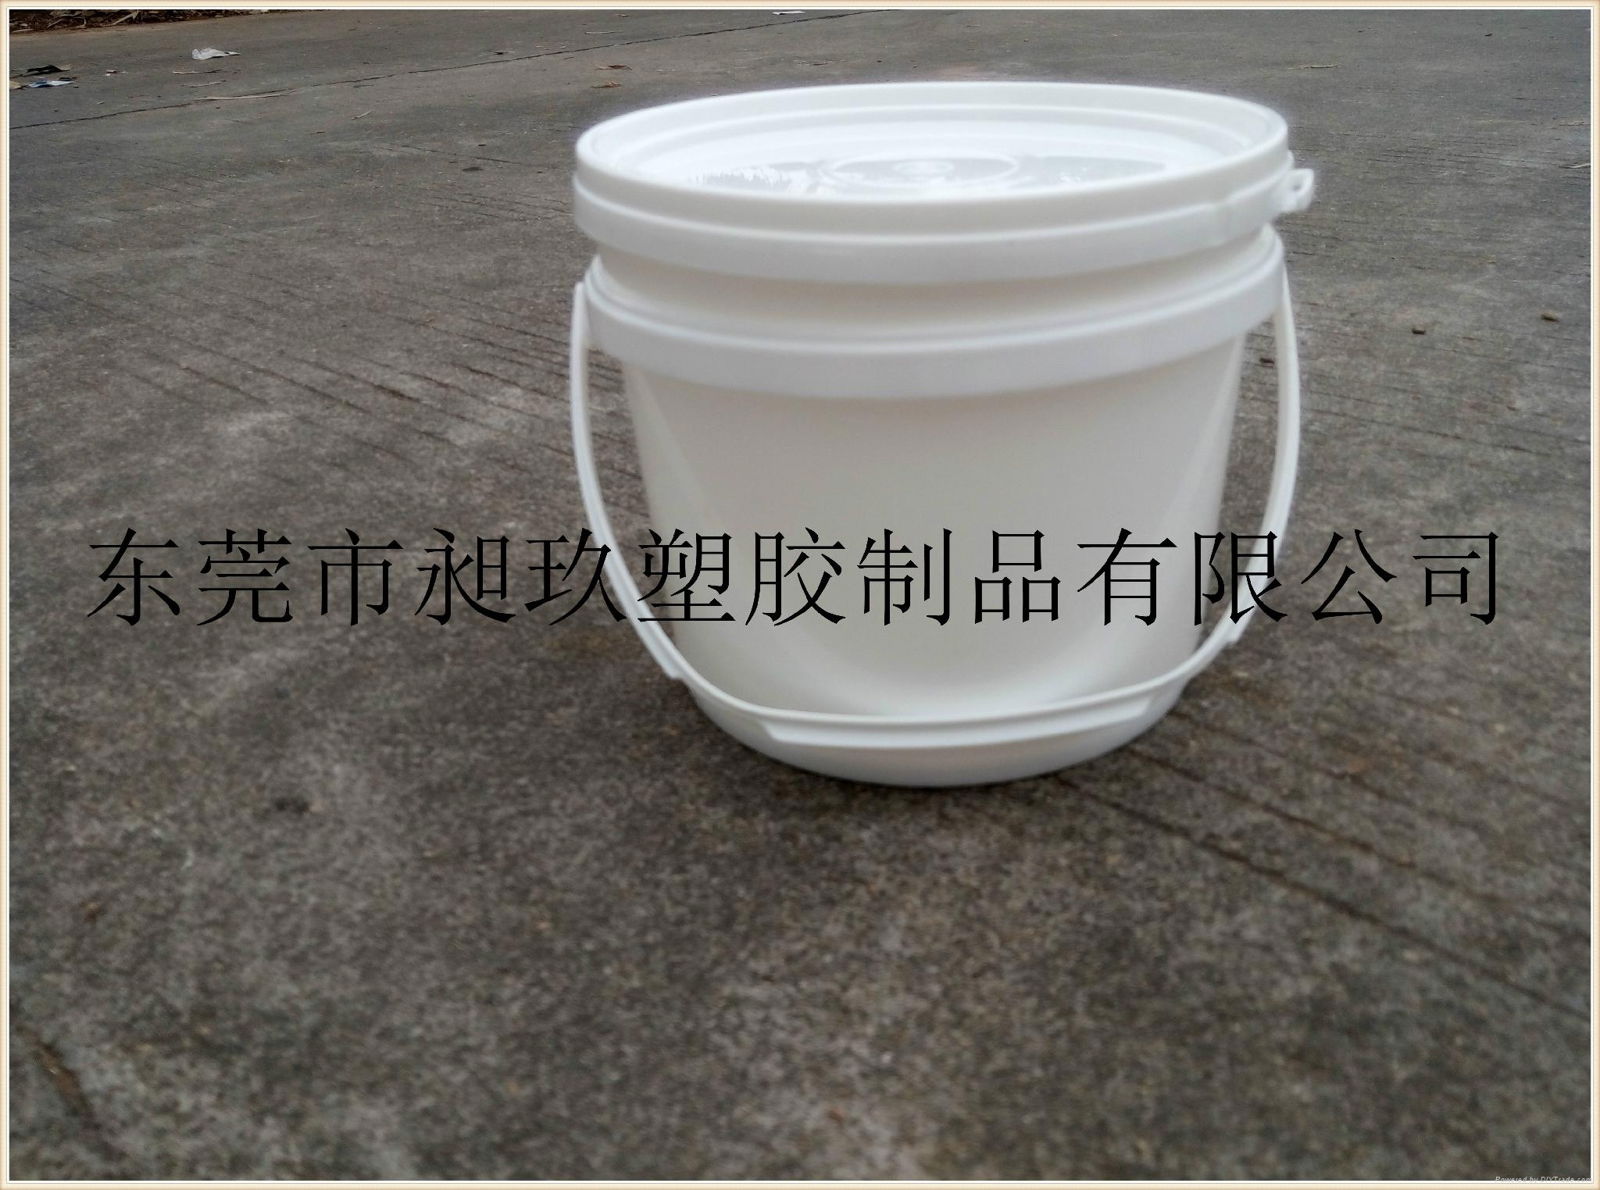 東莞3L塑料桶自產自銷質優價廉。